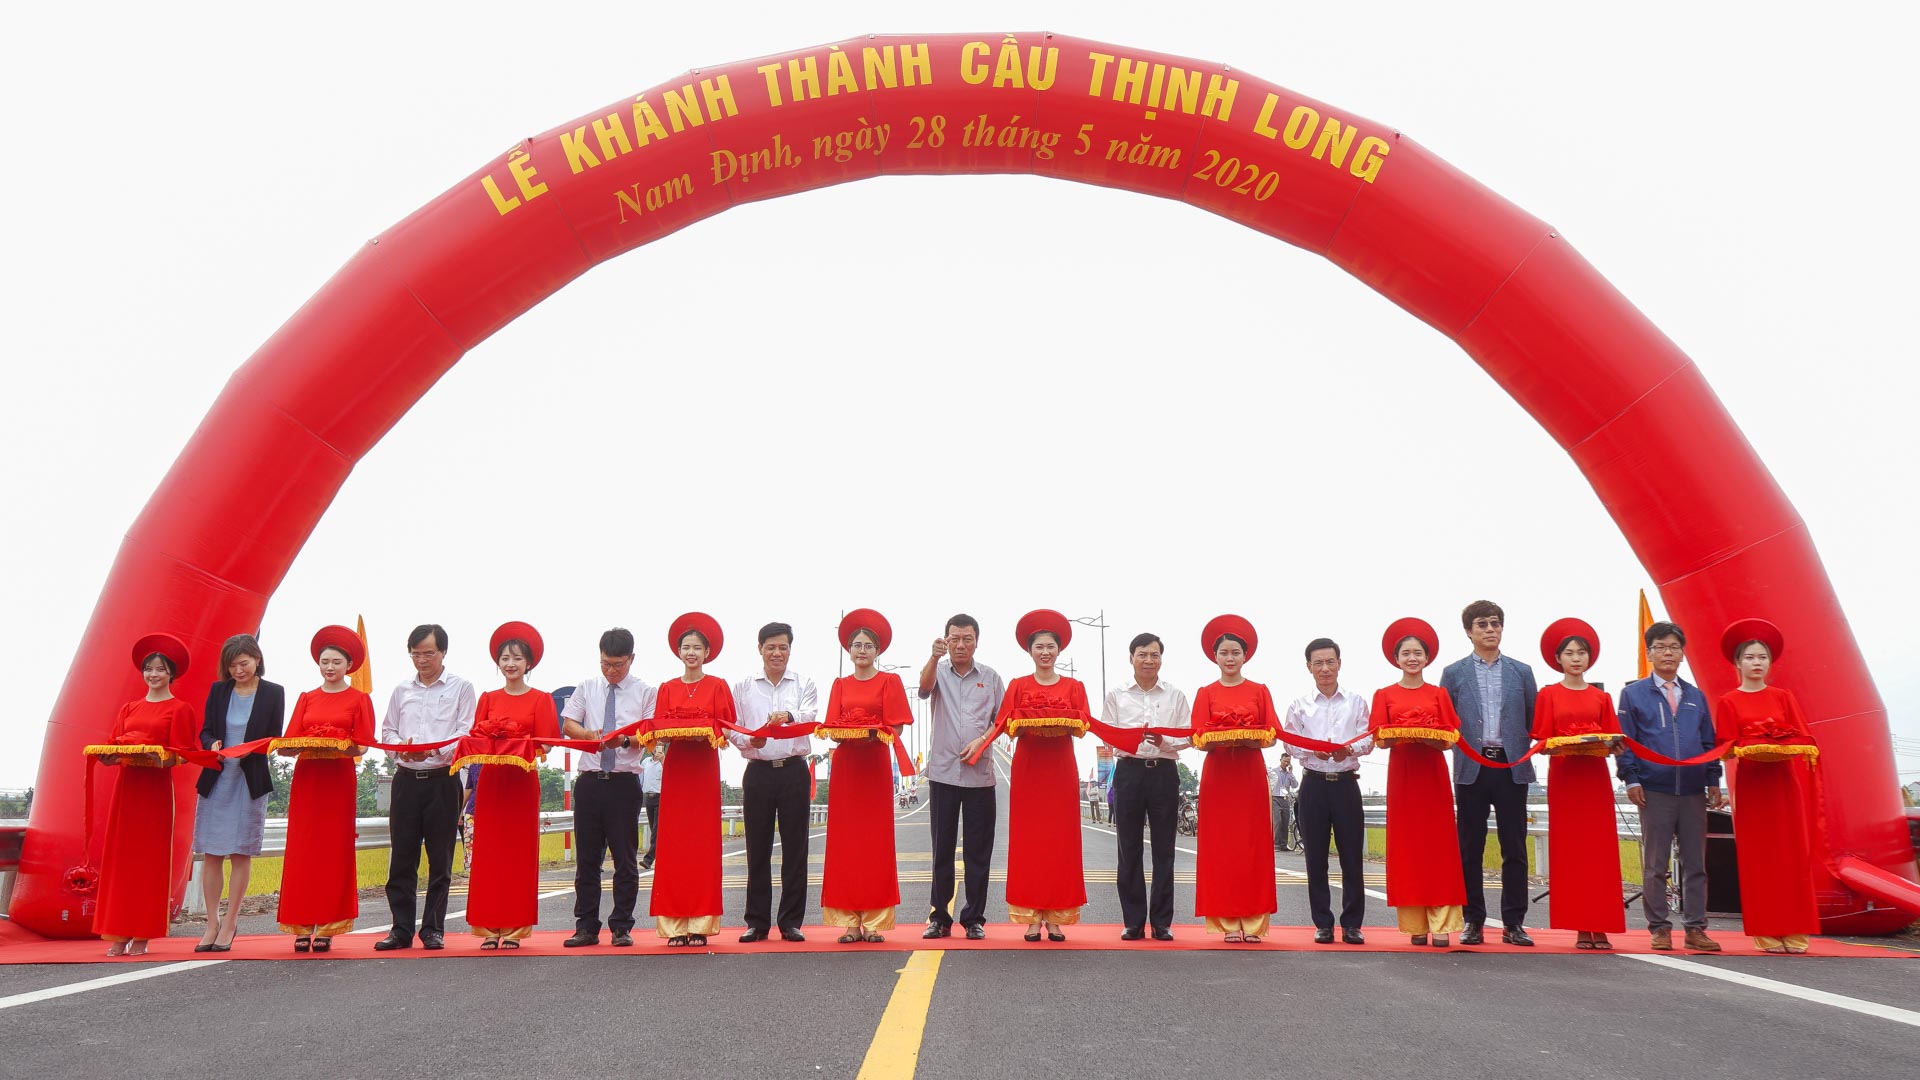  Sau hơn 2 năm thi công, công trình cầu Thịnh Long thuộc tuyến đường bộ ven biển tỉnh Nam Định, với tổng mức đầu tư hơn 1.158 tỉ đồng đã chính thức thông xe vào sáng 28/5